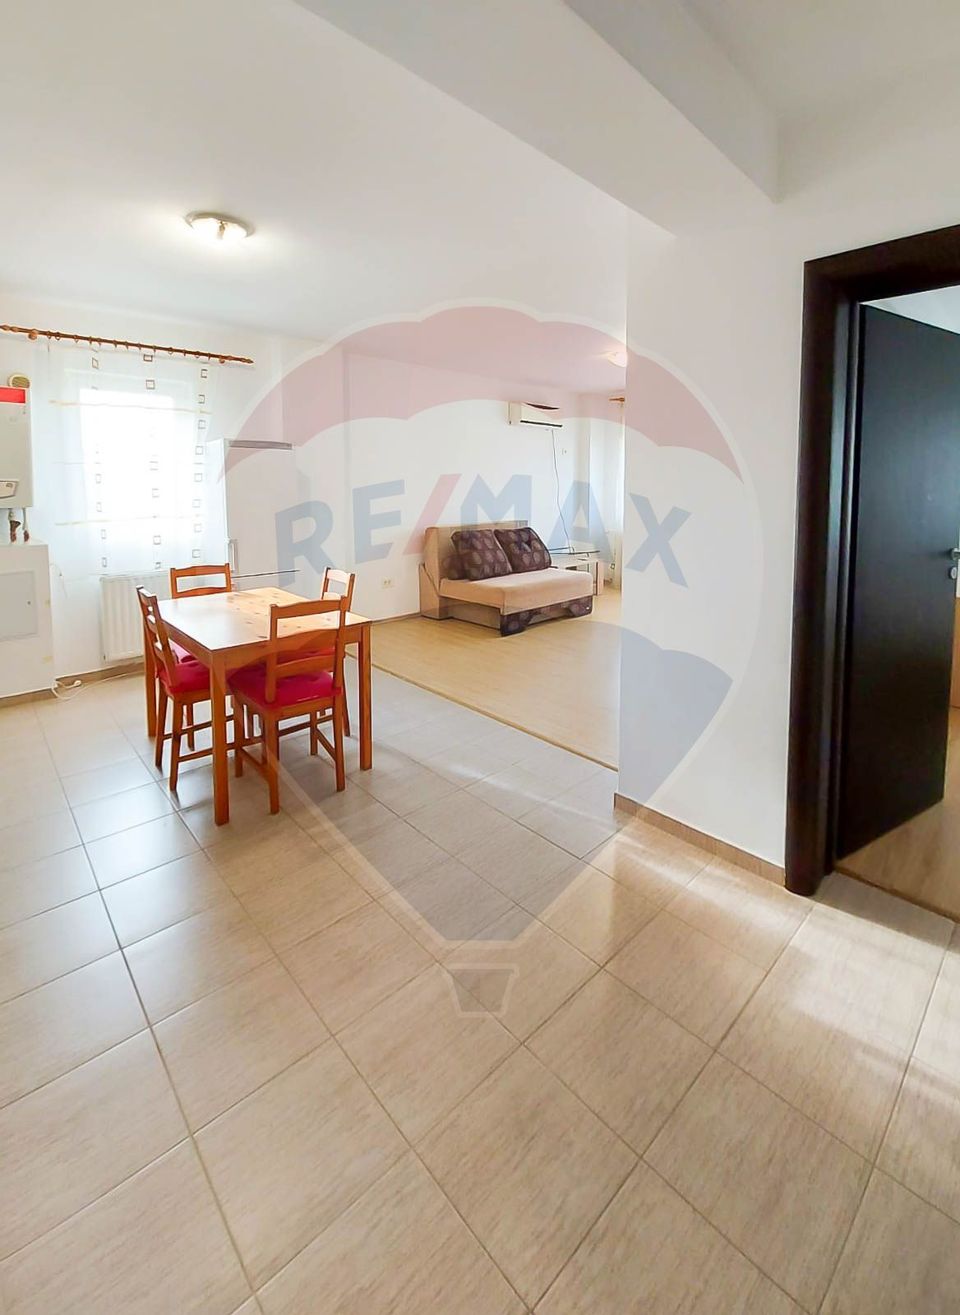 2-room apartment in Militari Residence